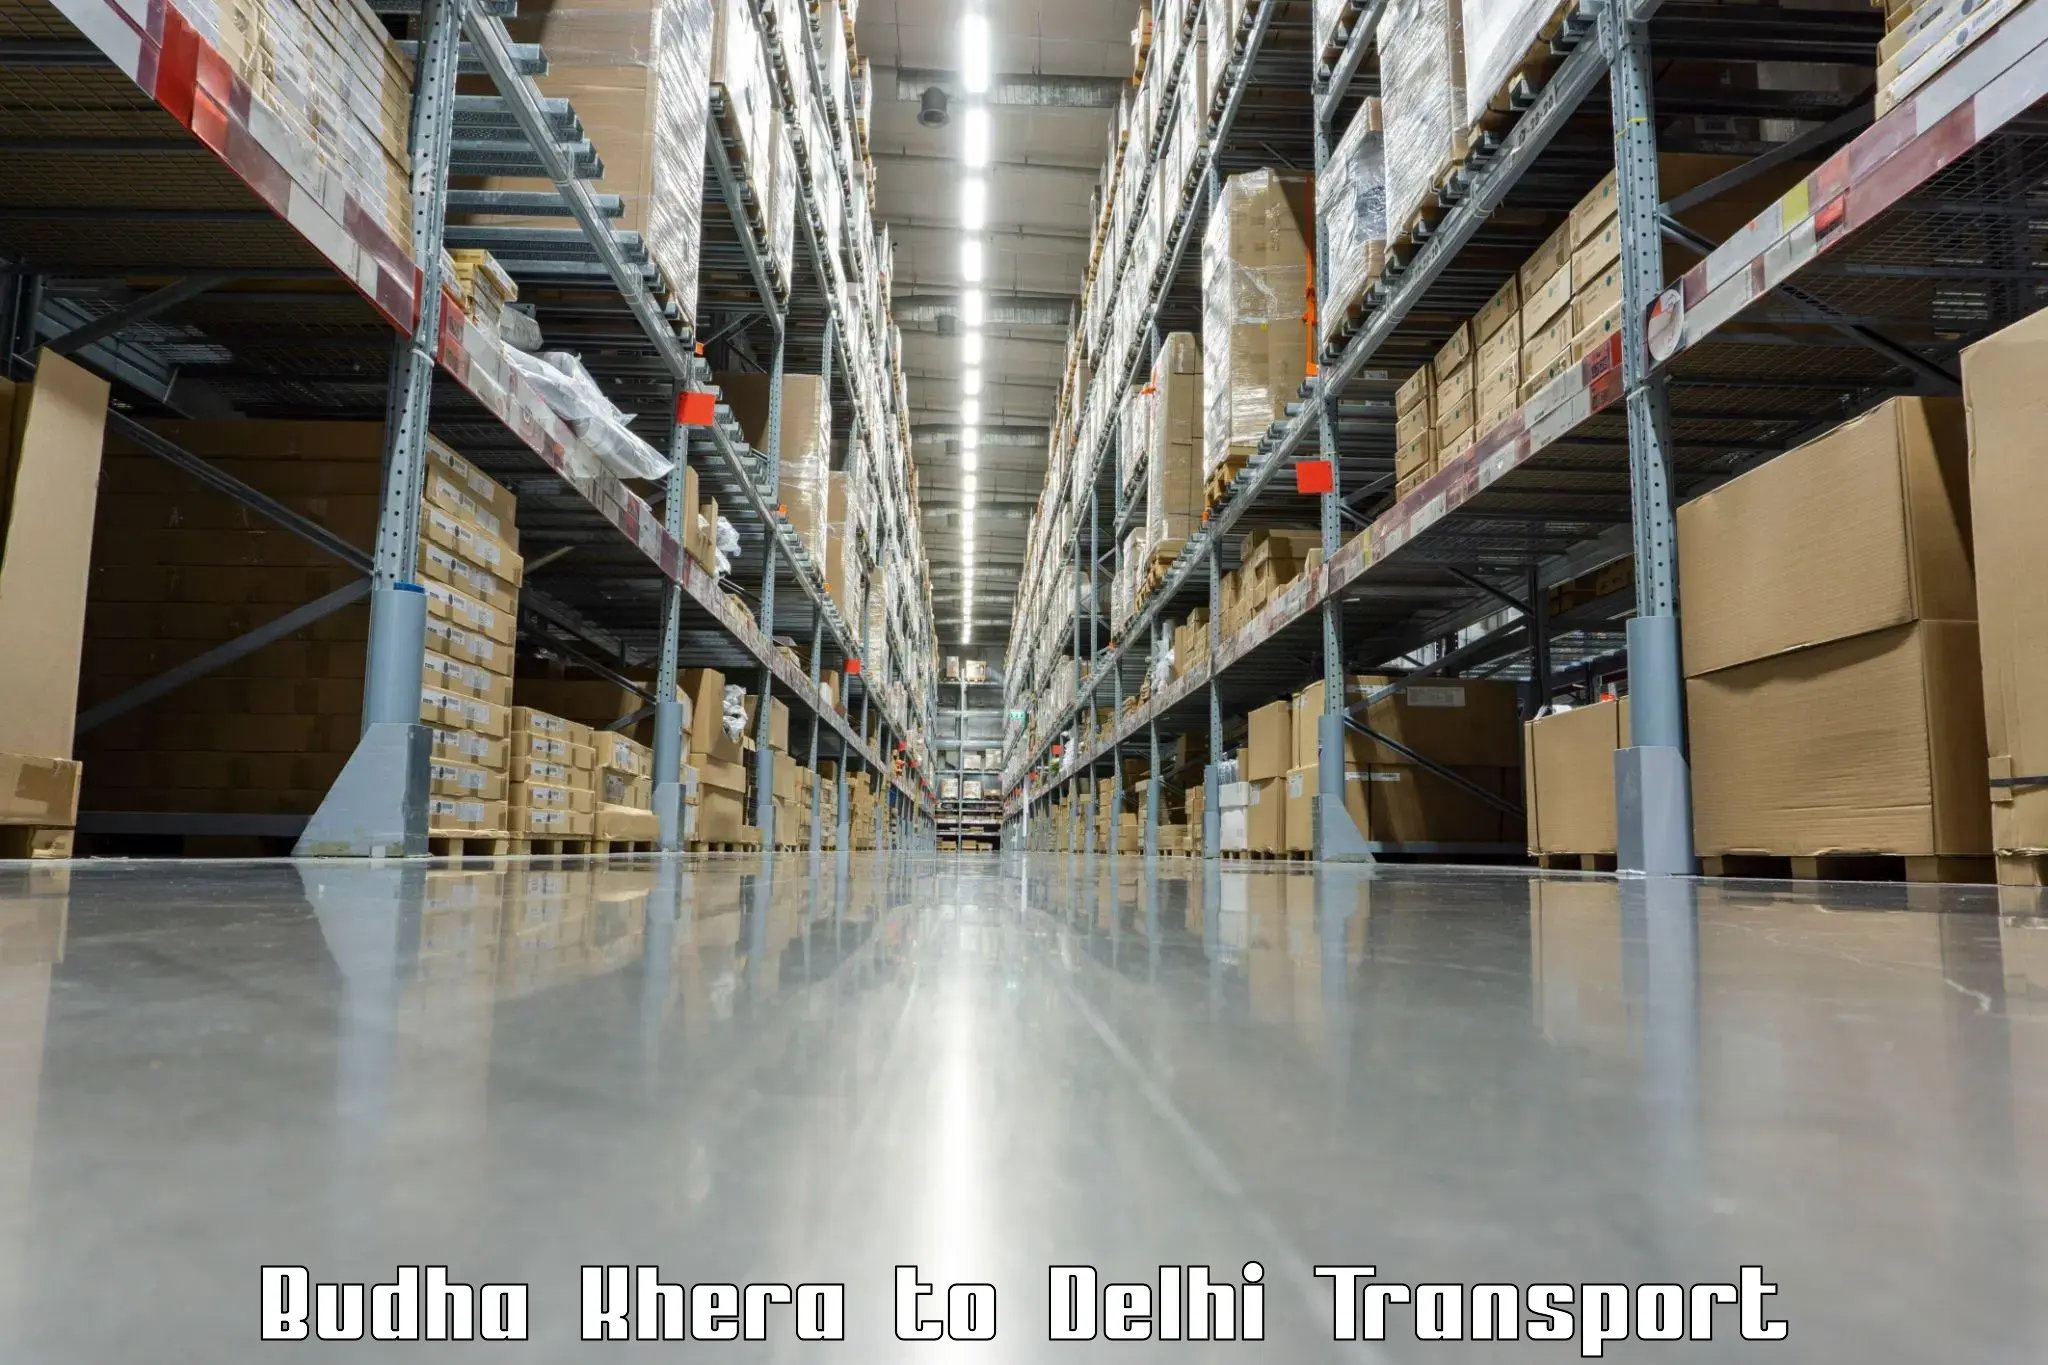 Daily transport service Budha Khera to Kalkaji